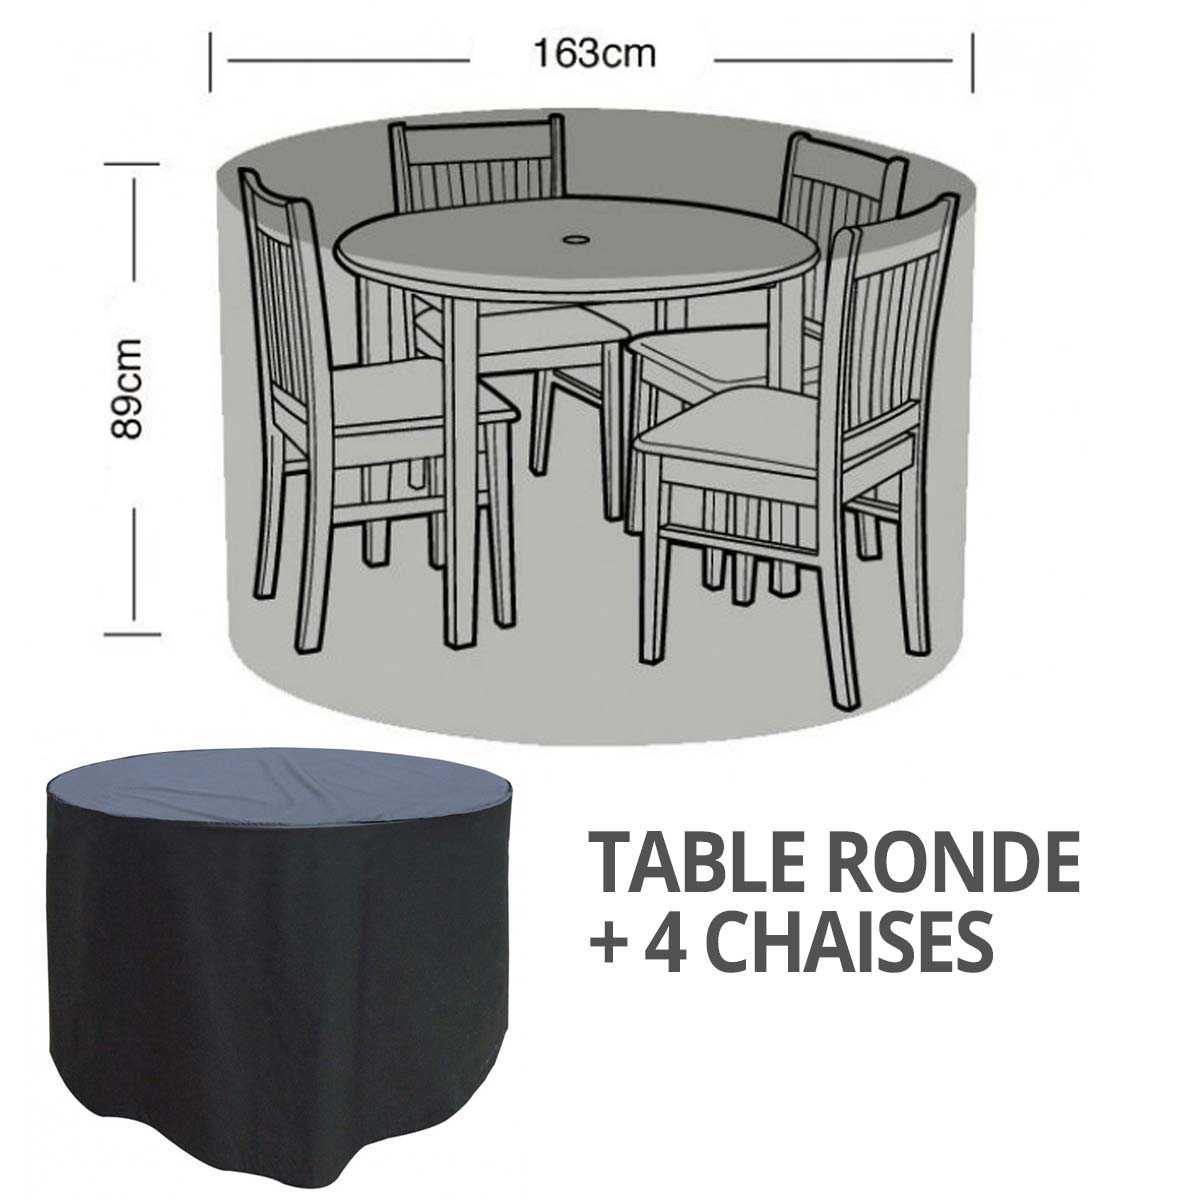 Housse bâche protection table ronde + 4 chaises diam. 163cm, vente au  meilleur prix